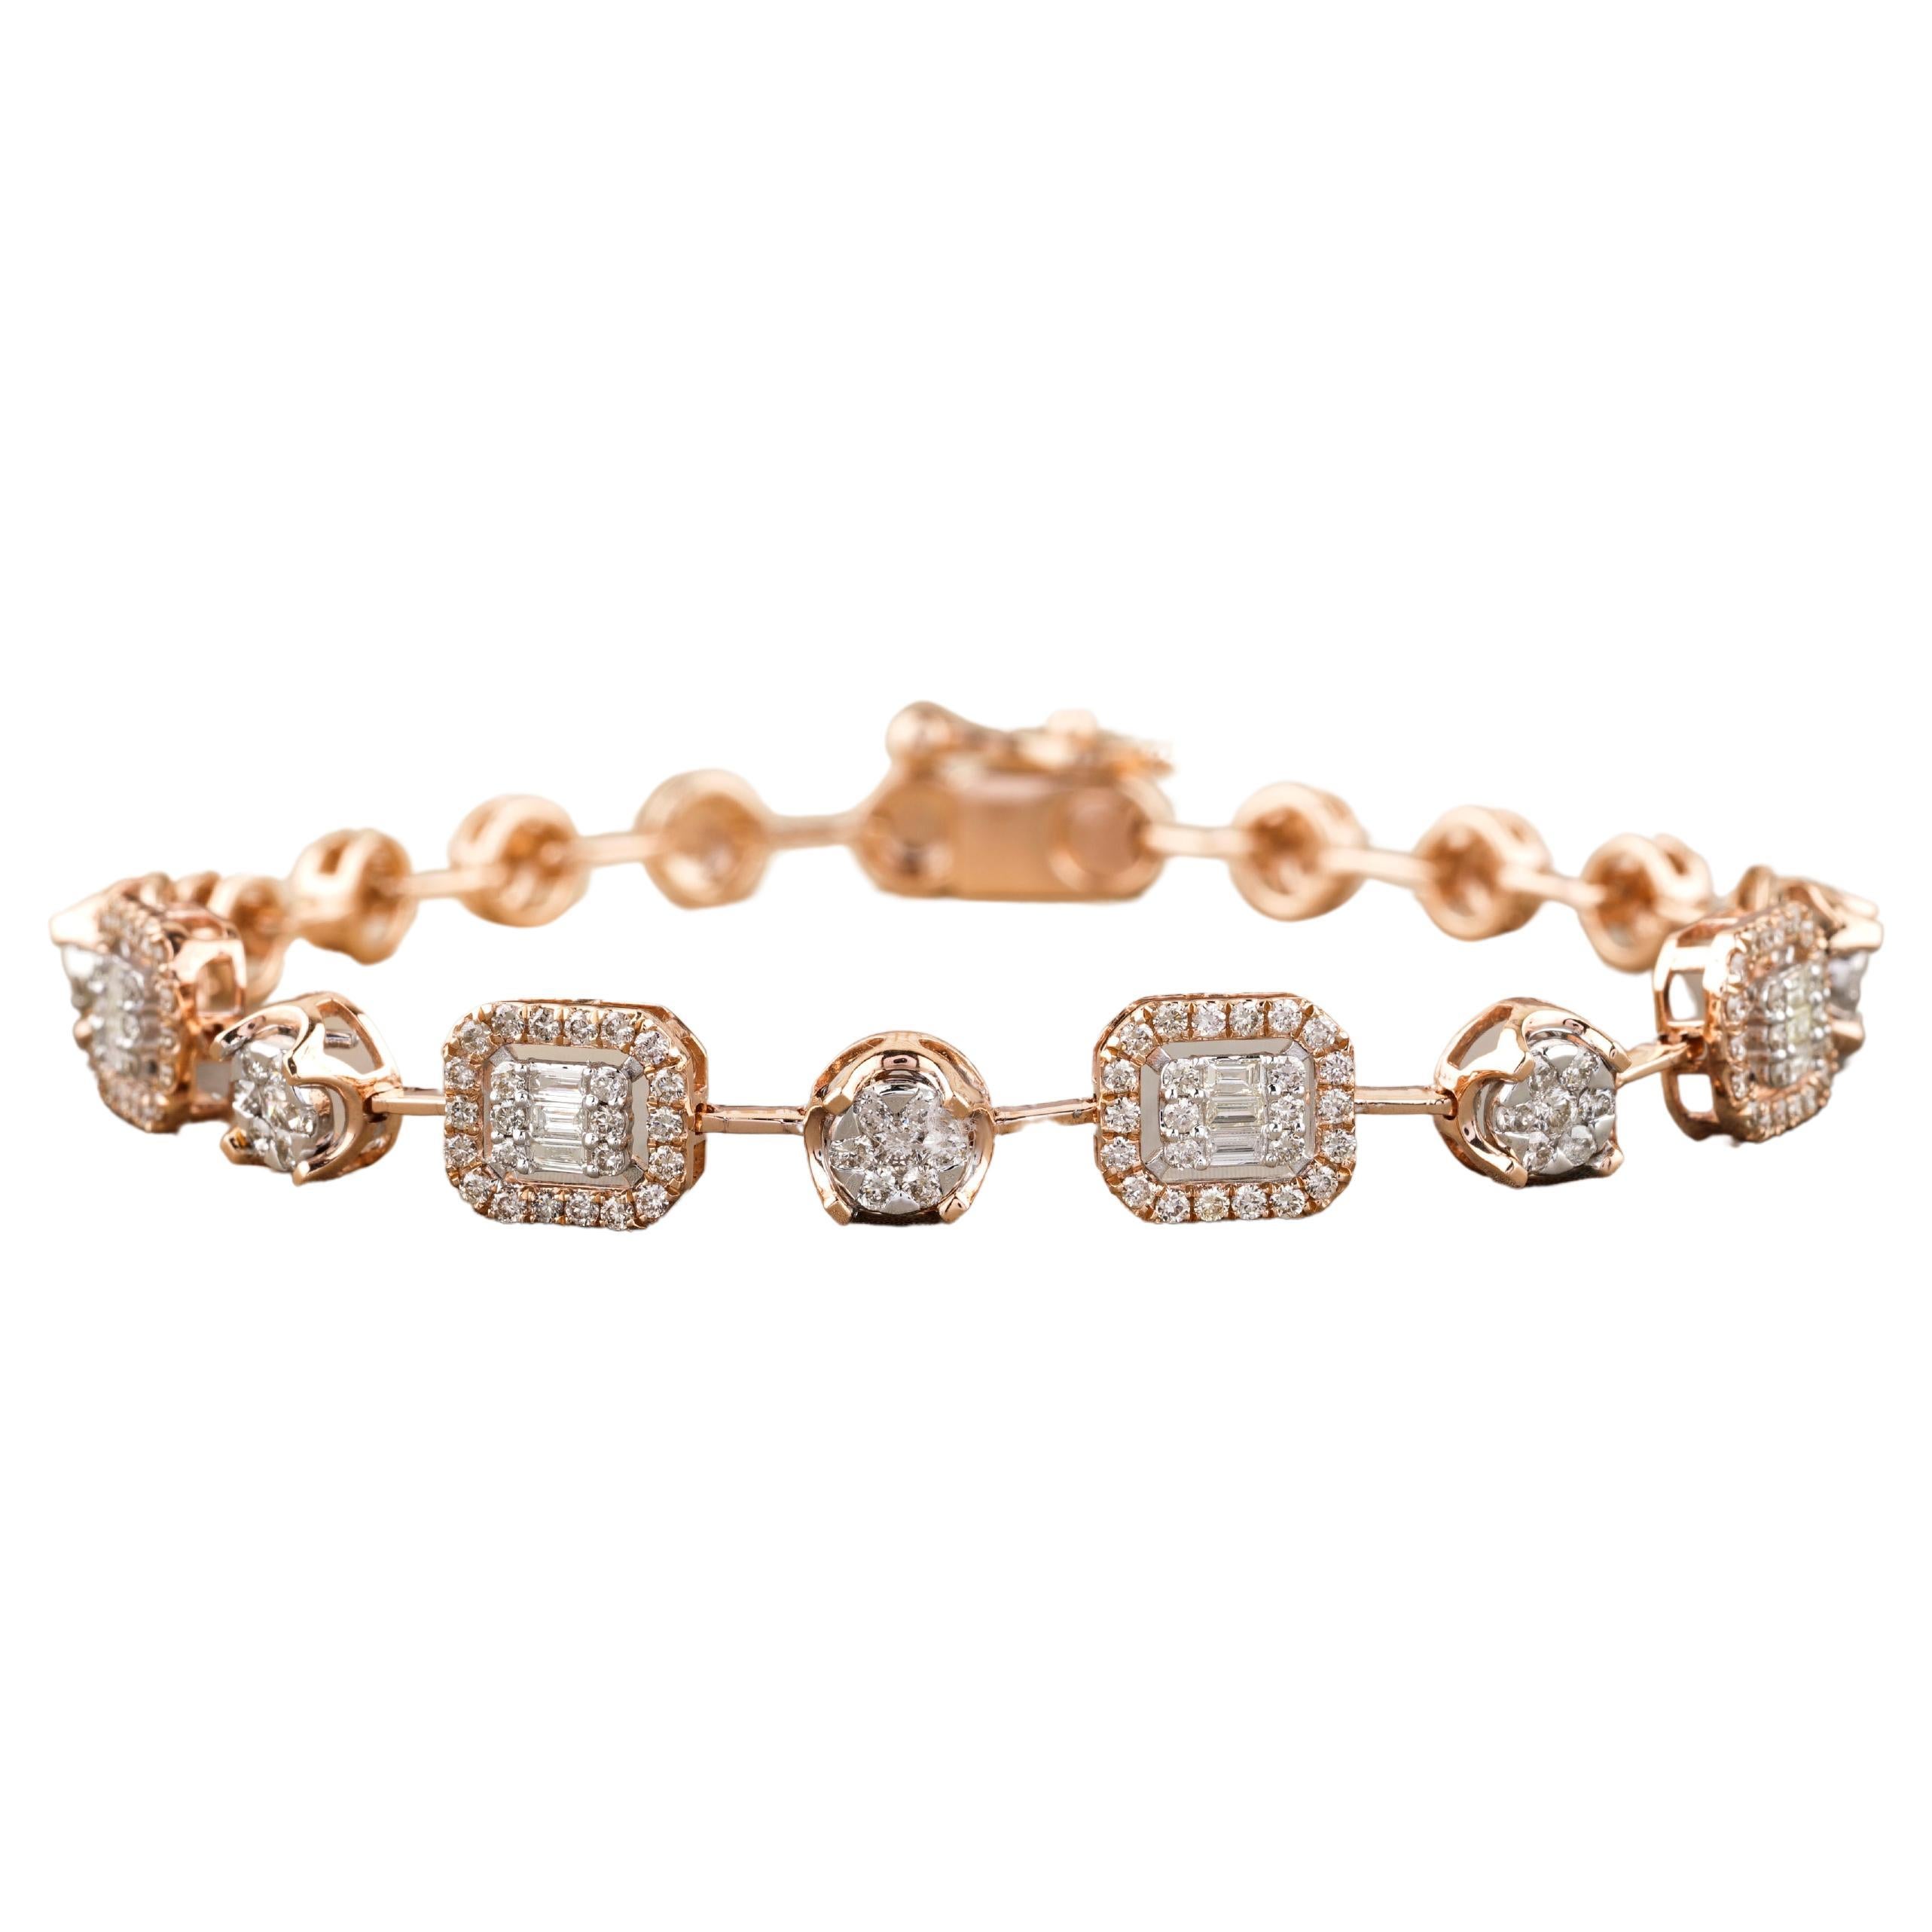 Bracelet tennis en or massif 18 carats avec diamants ronds et baguettes avec sertissage d'illusion